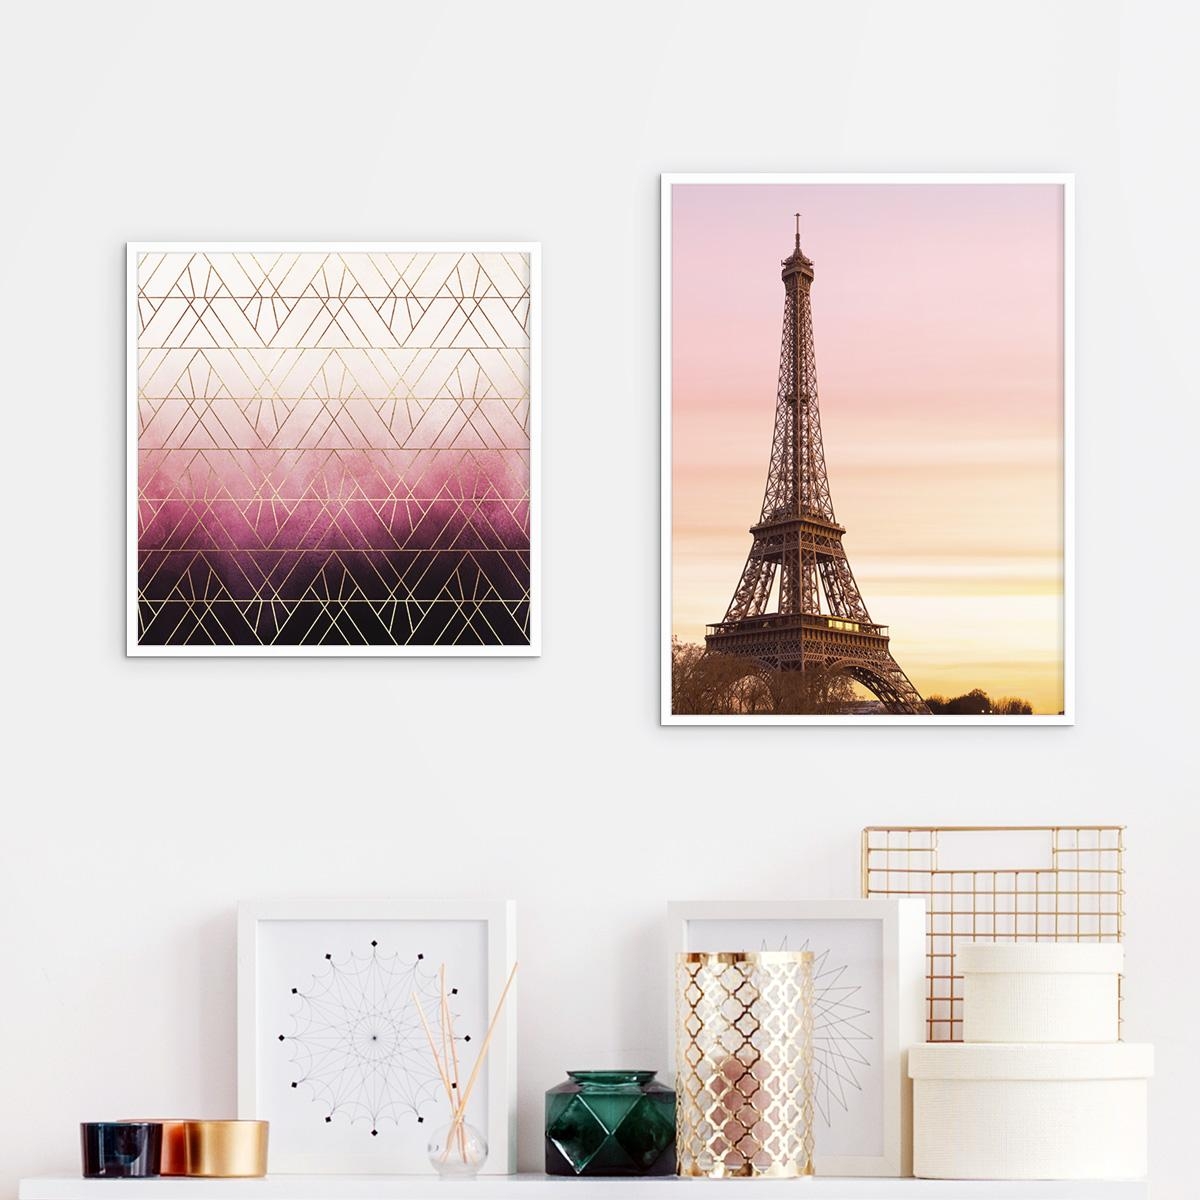 "Pink Ombre Triangles" & "Himmel über Paris" als gerahmte #Poster 🇫🇷

#gerahmteposter #foto #wohnzimmer #posterlounge